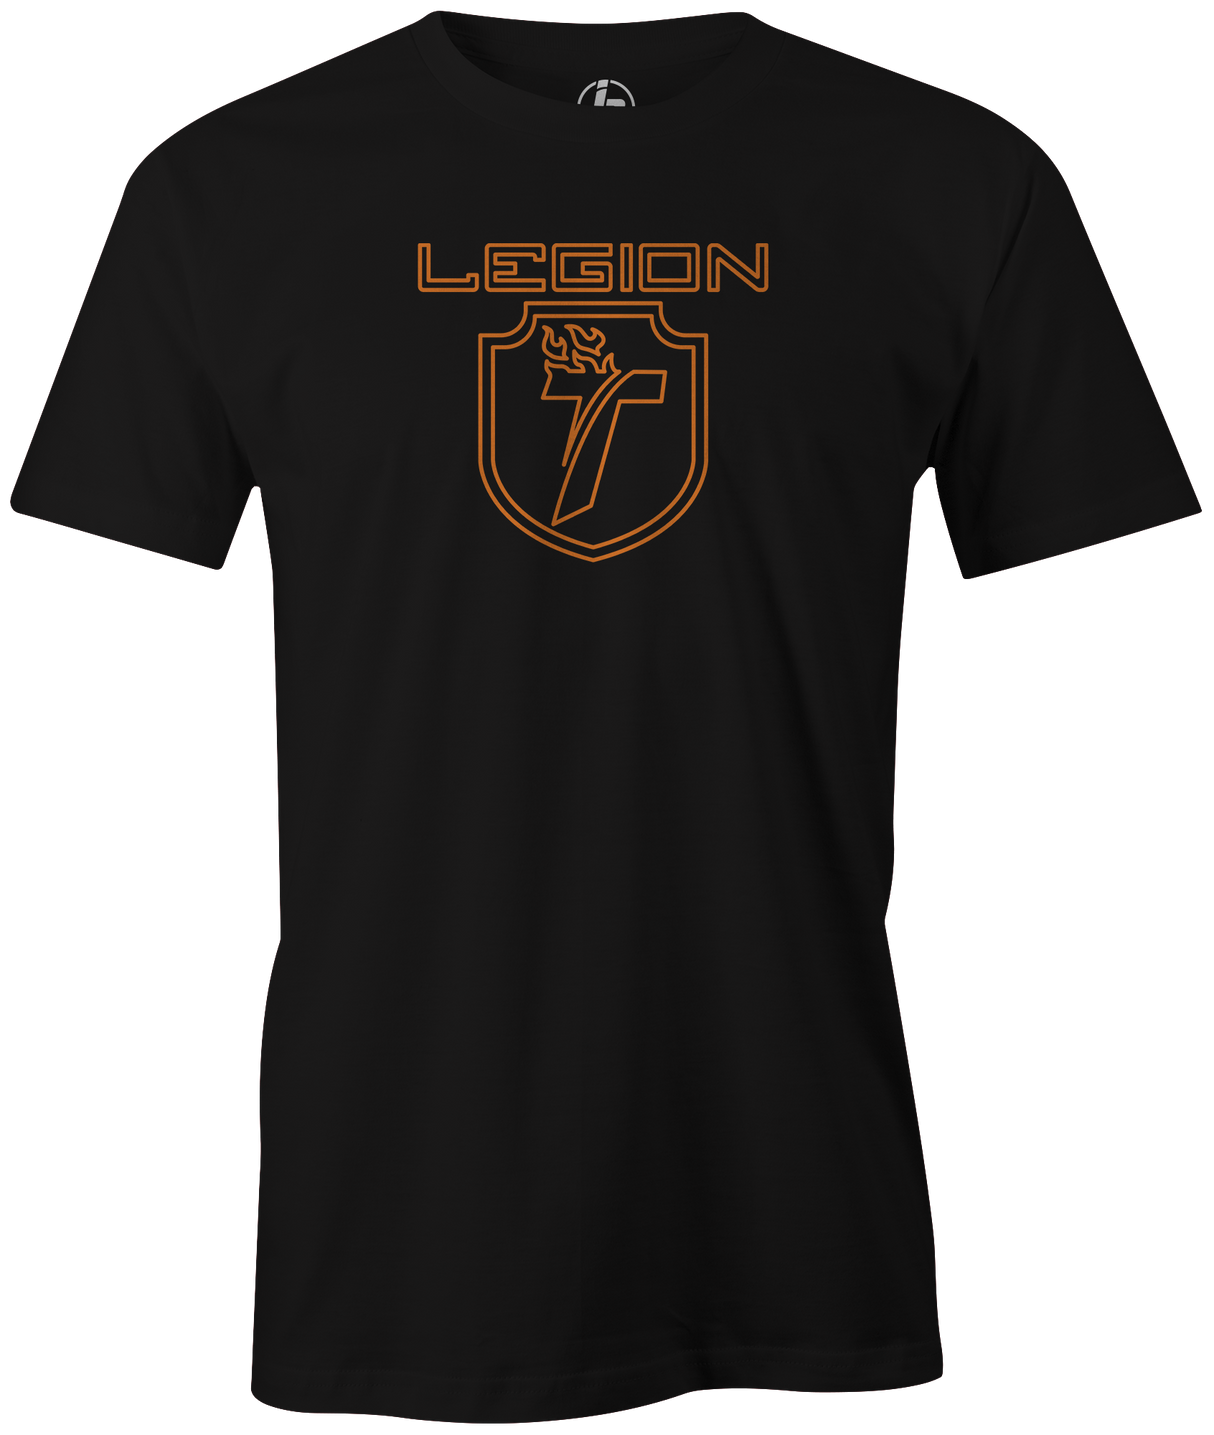 track-legion-pearl bowling ball logo tee shirt bowler tshirt